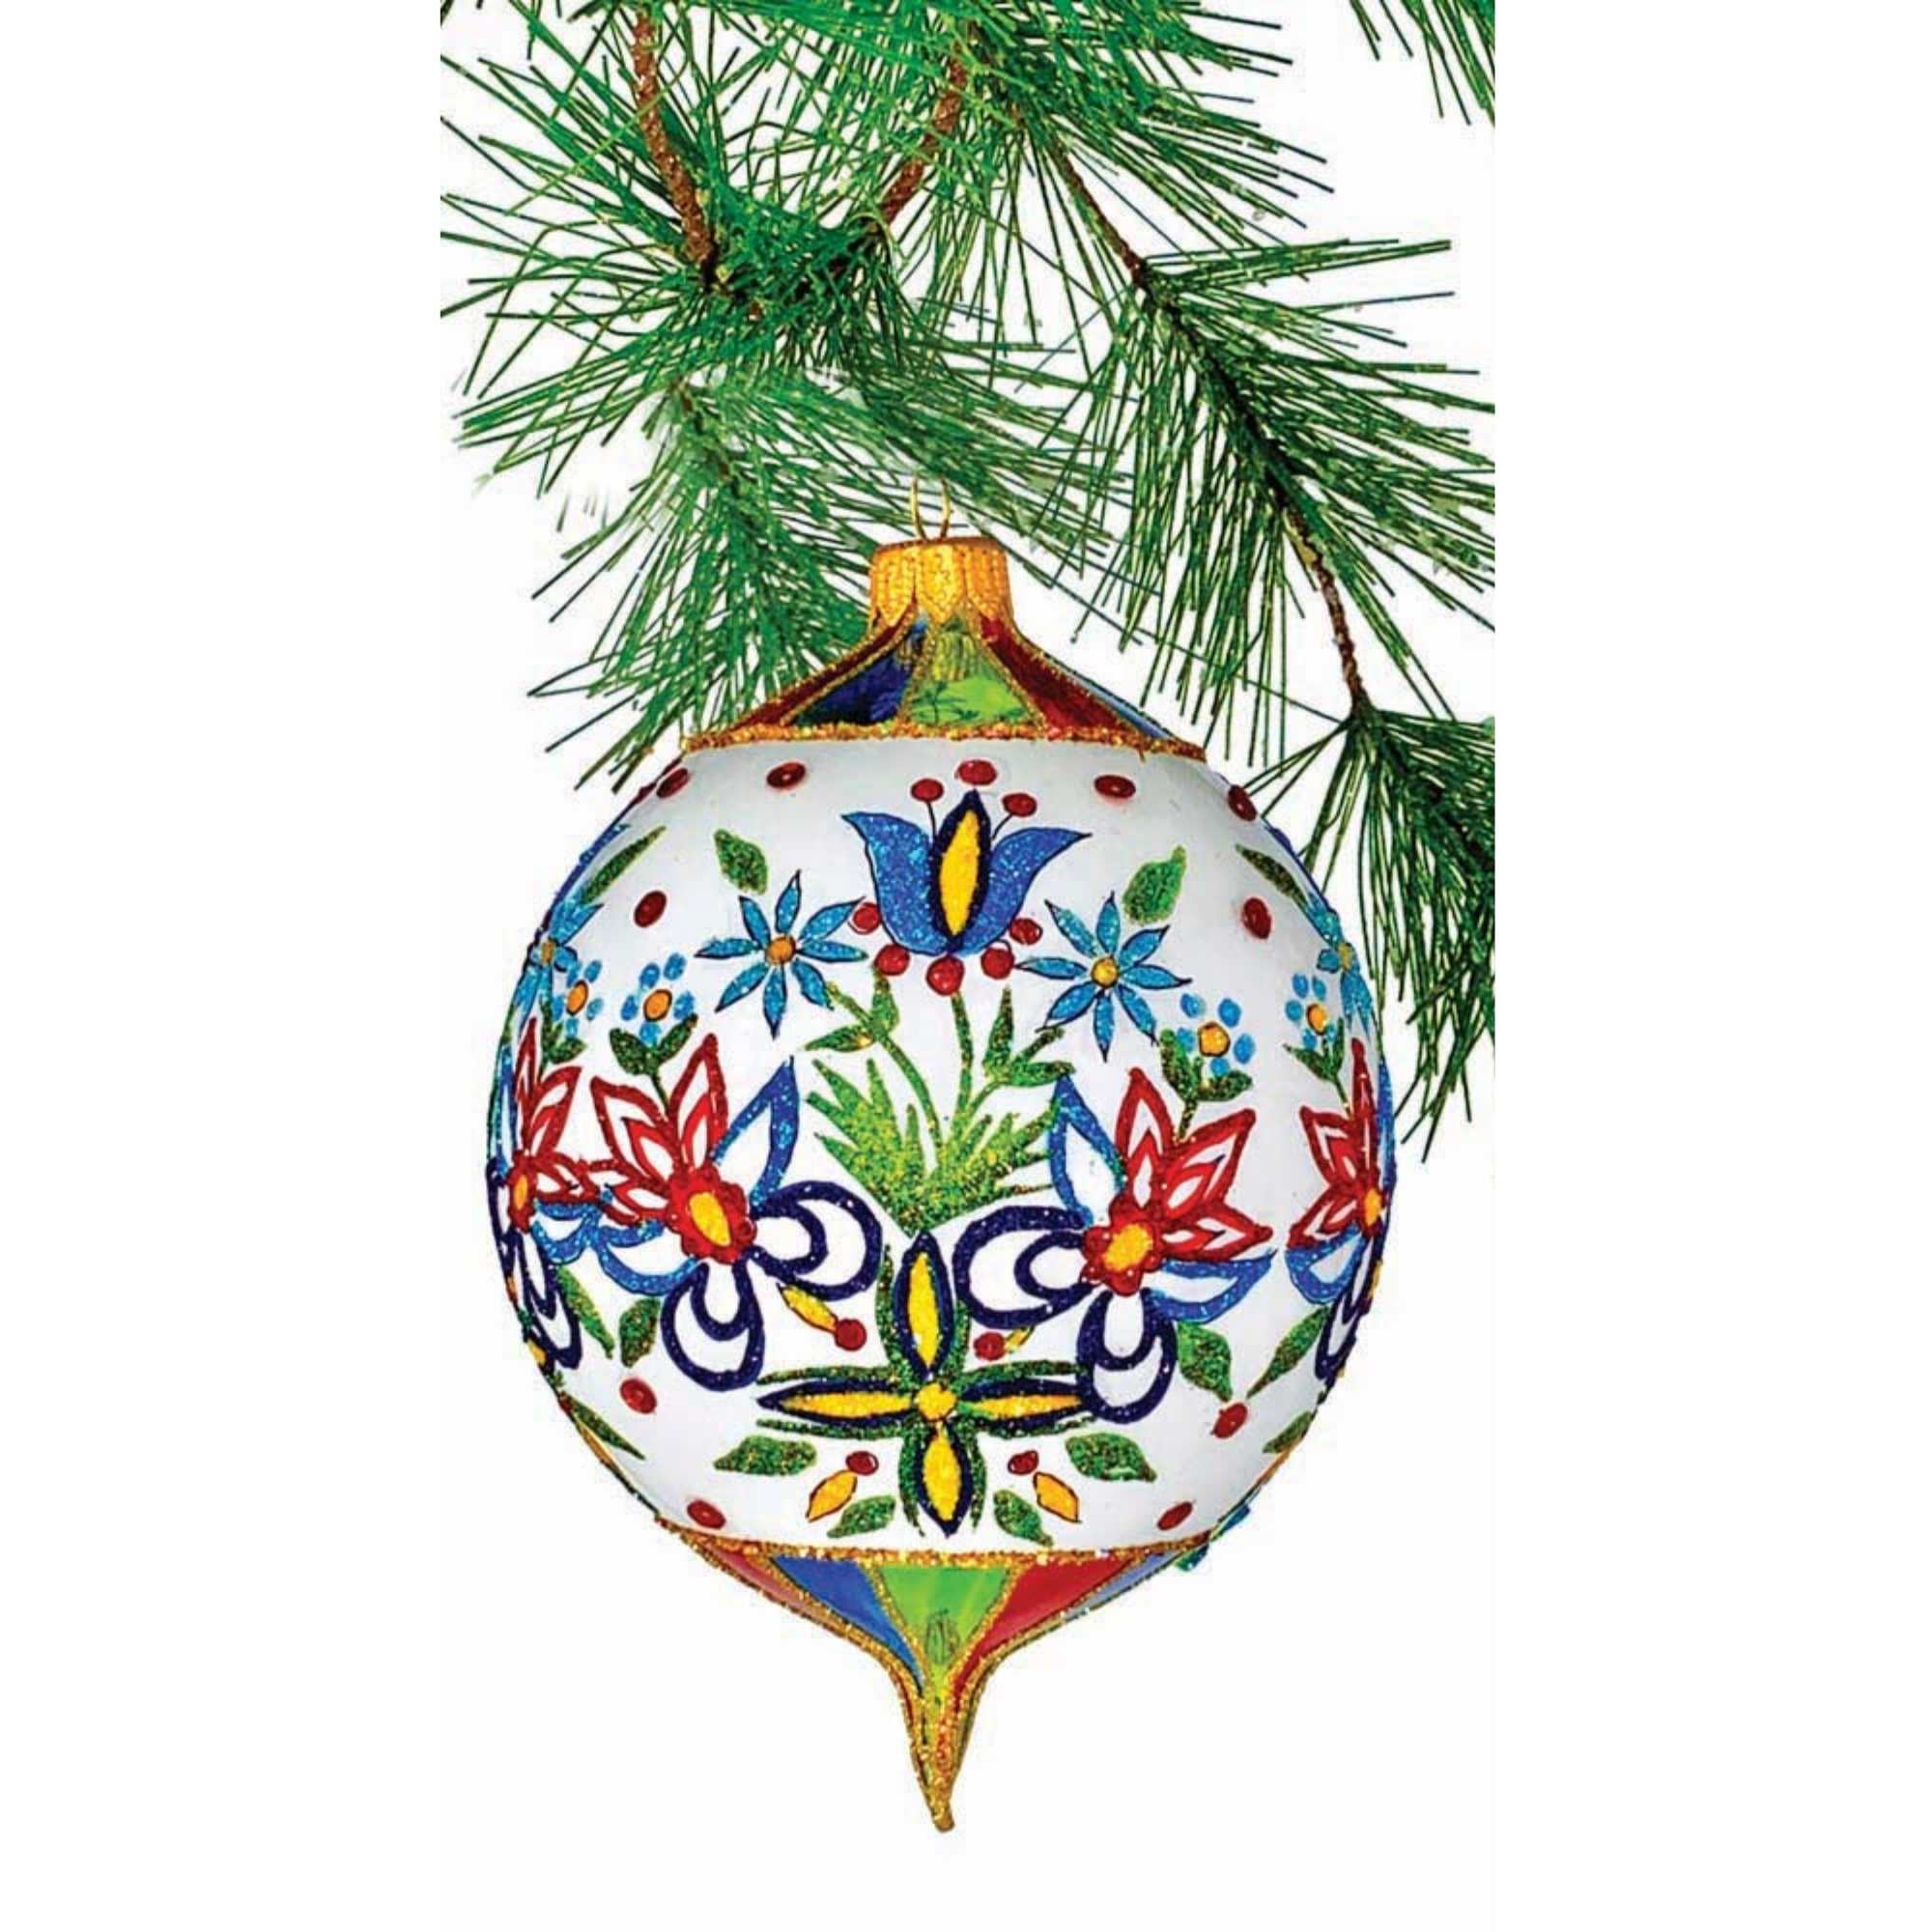 Shell Heart Decor Ornament – Coco's Trading Post